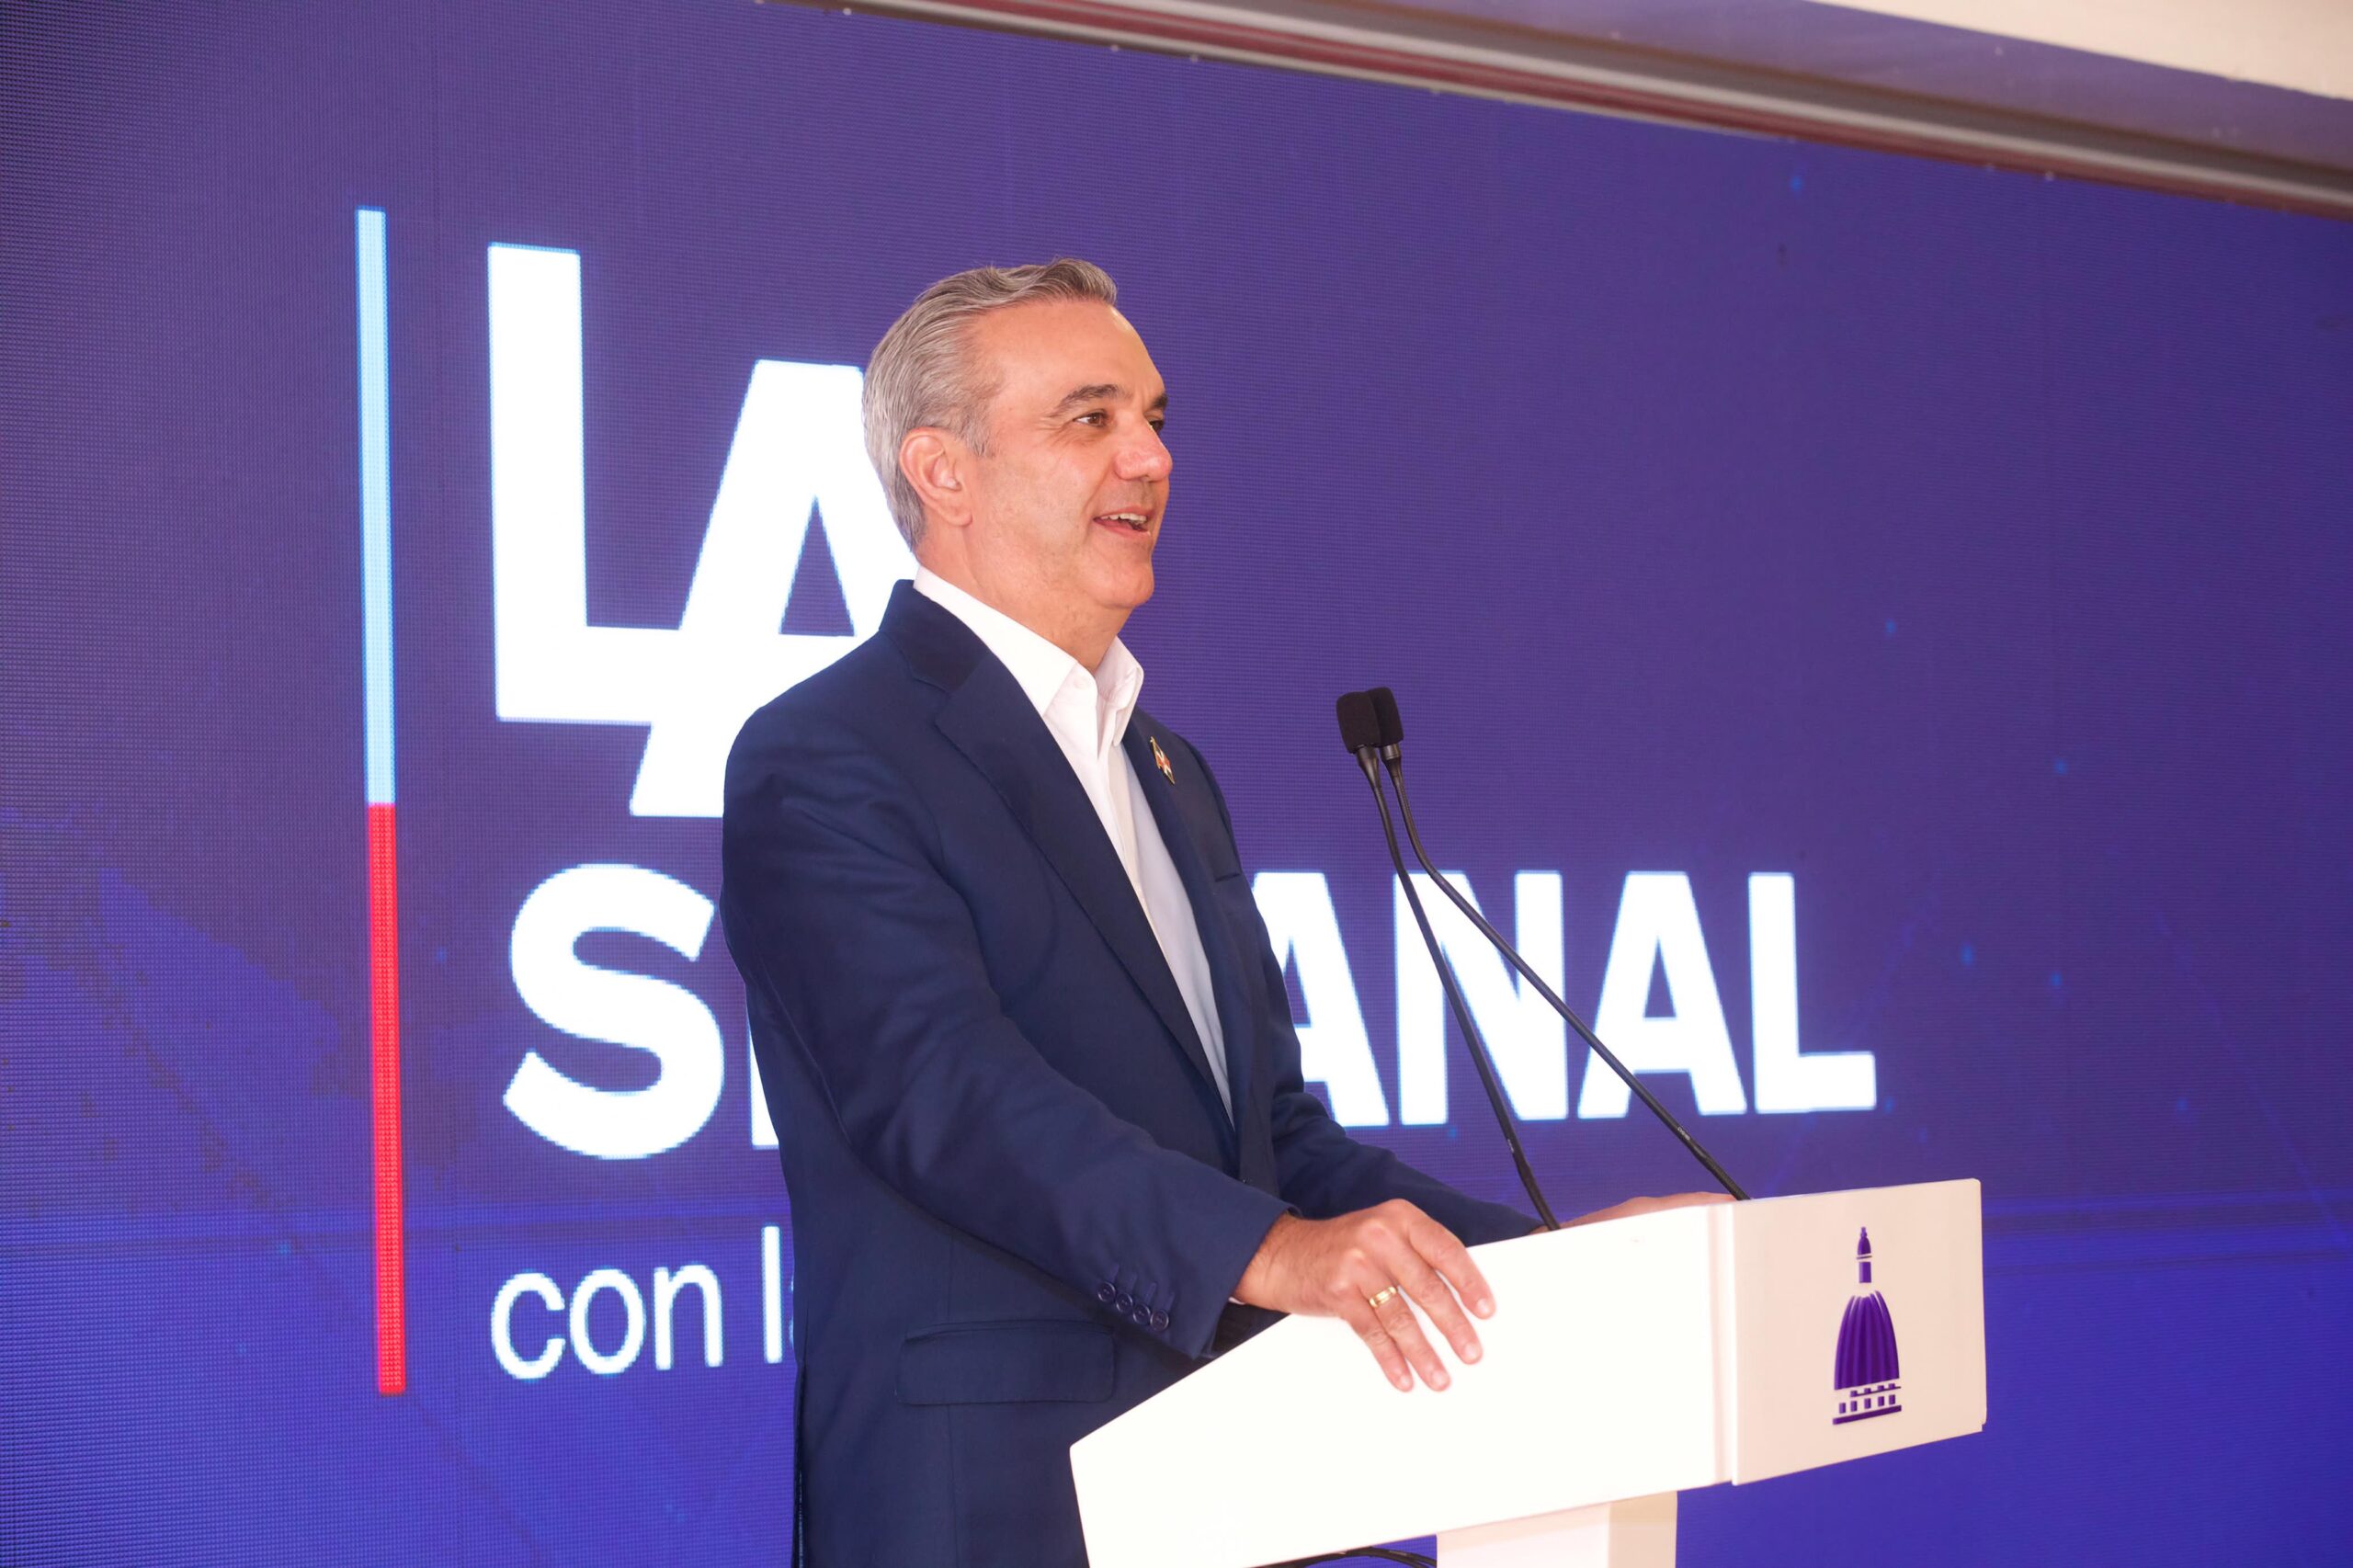 REPÚBLICA DOMINICANA: Presidente Abinader presenta realizaciones en educación, transporte, vivienda, salud e infraestructura de la provincia de Santiago